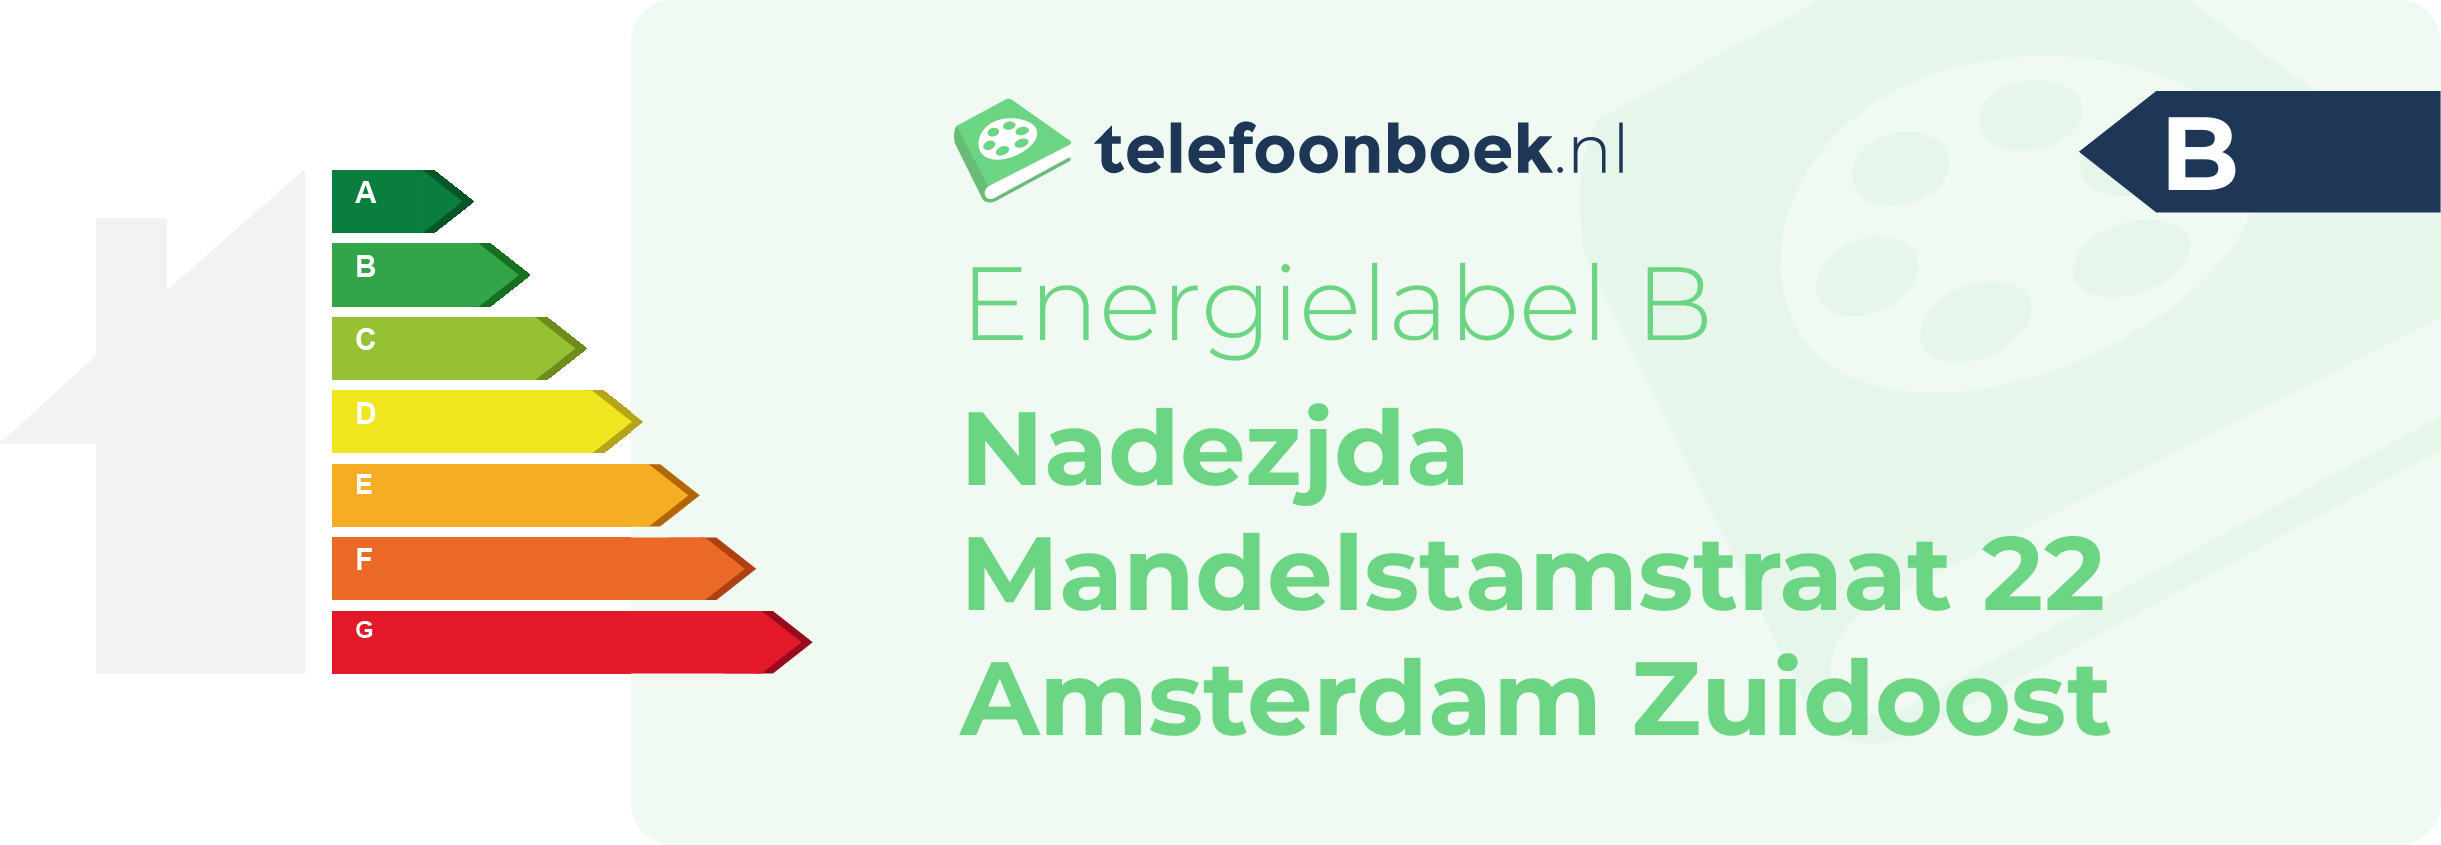 Energielabel Nadezjda Mandelstamstraat 22 Amsterdam Zuidoost